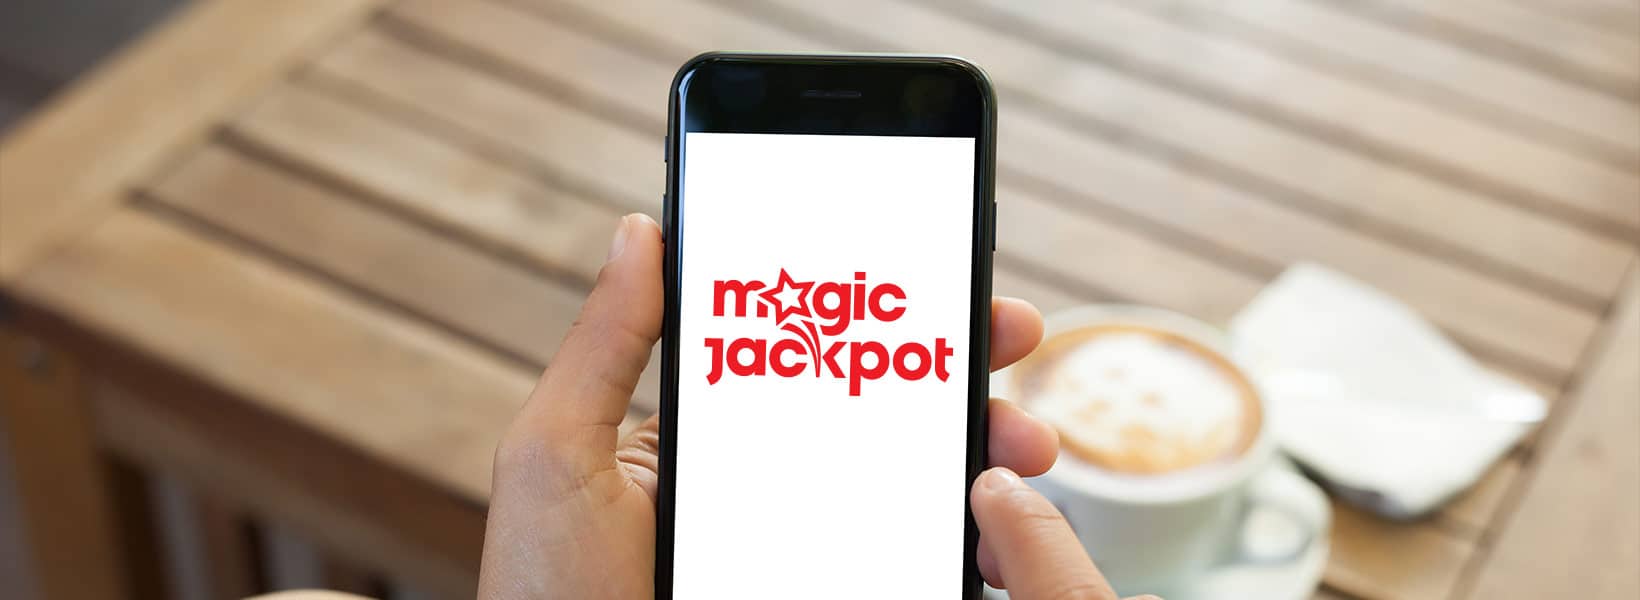 Există o aplicație Magic Jackpot?